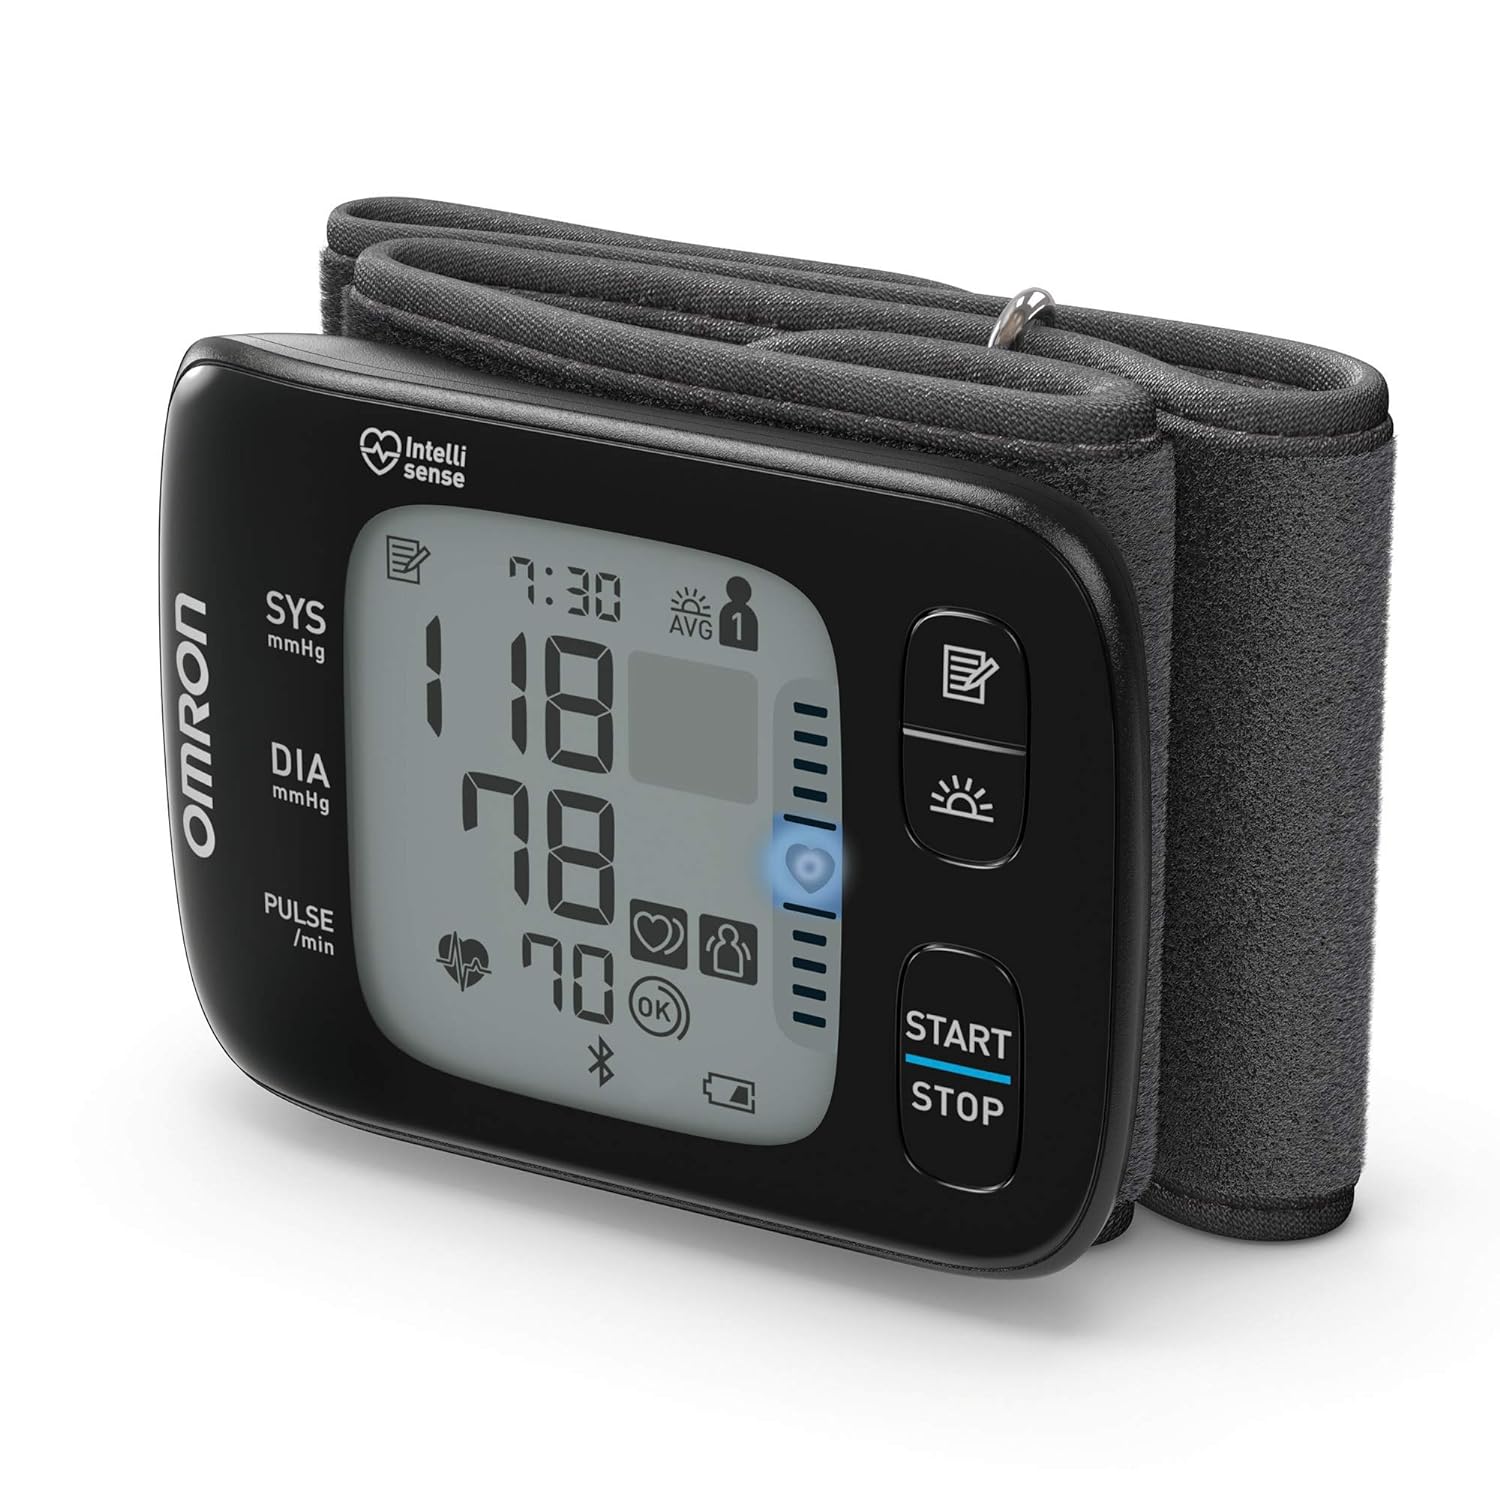 OMRON RS7 Intelli IT digitales Handgelenk-Blutdruckmessgerät, klinisch validiert auch bei Übergewicht, Bluetooth- und Smartphone-kompatibel, Testsieger Stiftung Warentest 09/2020